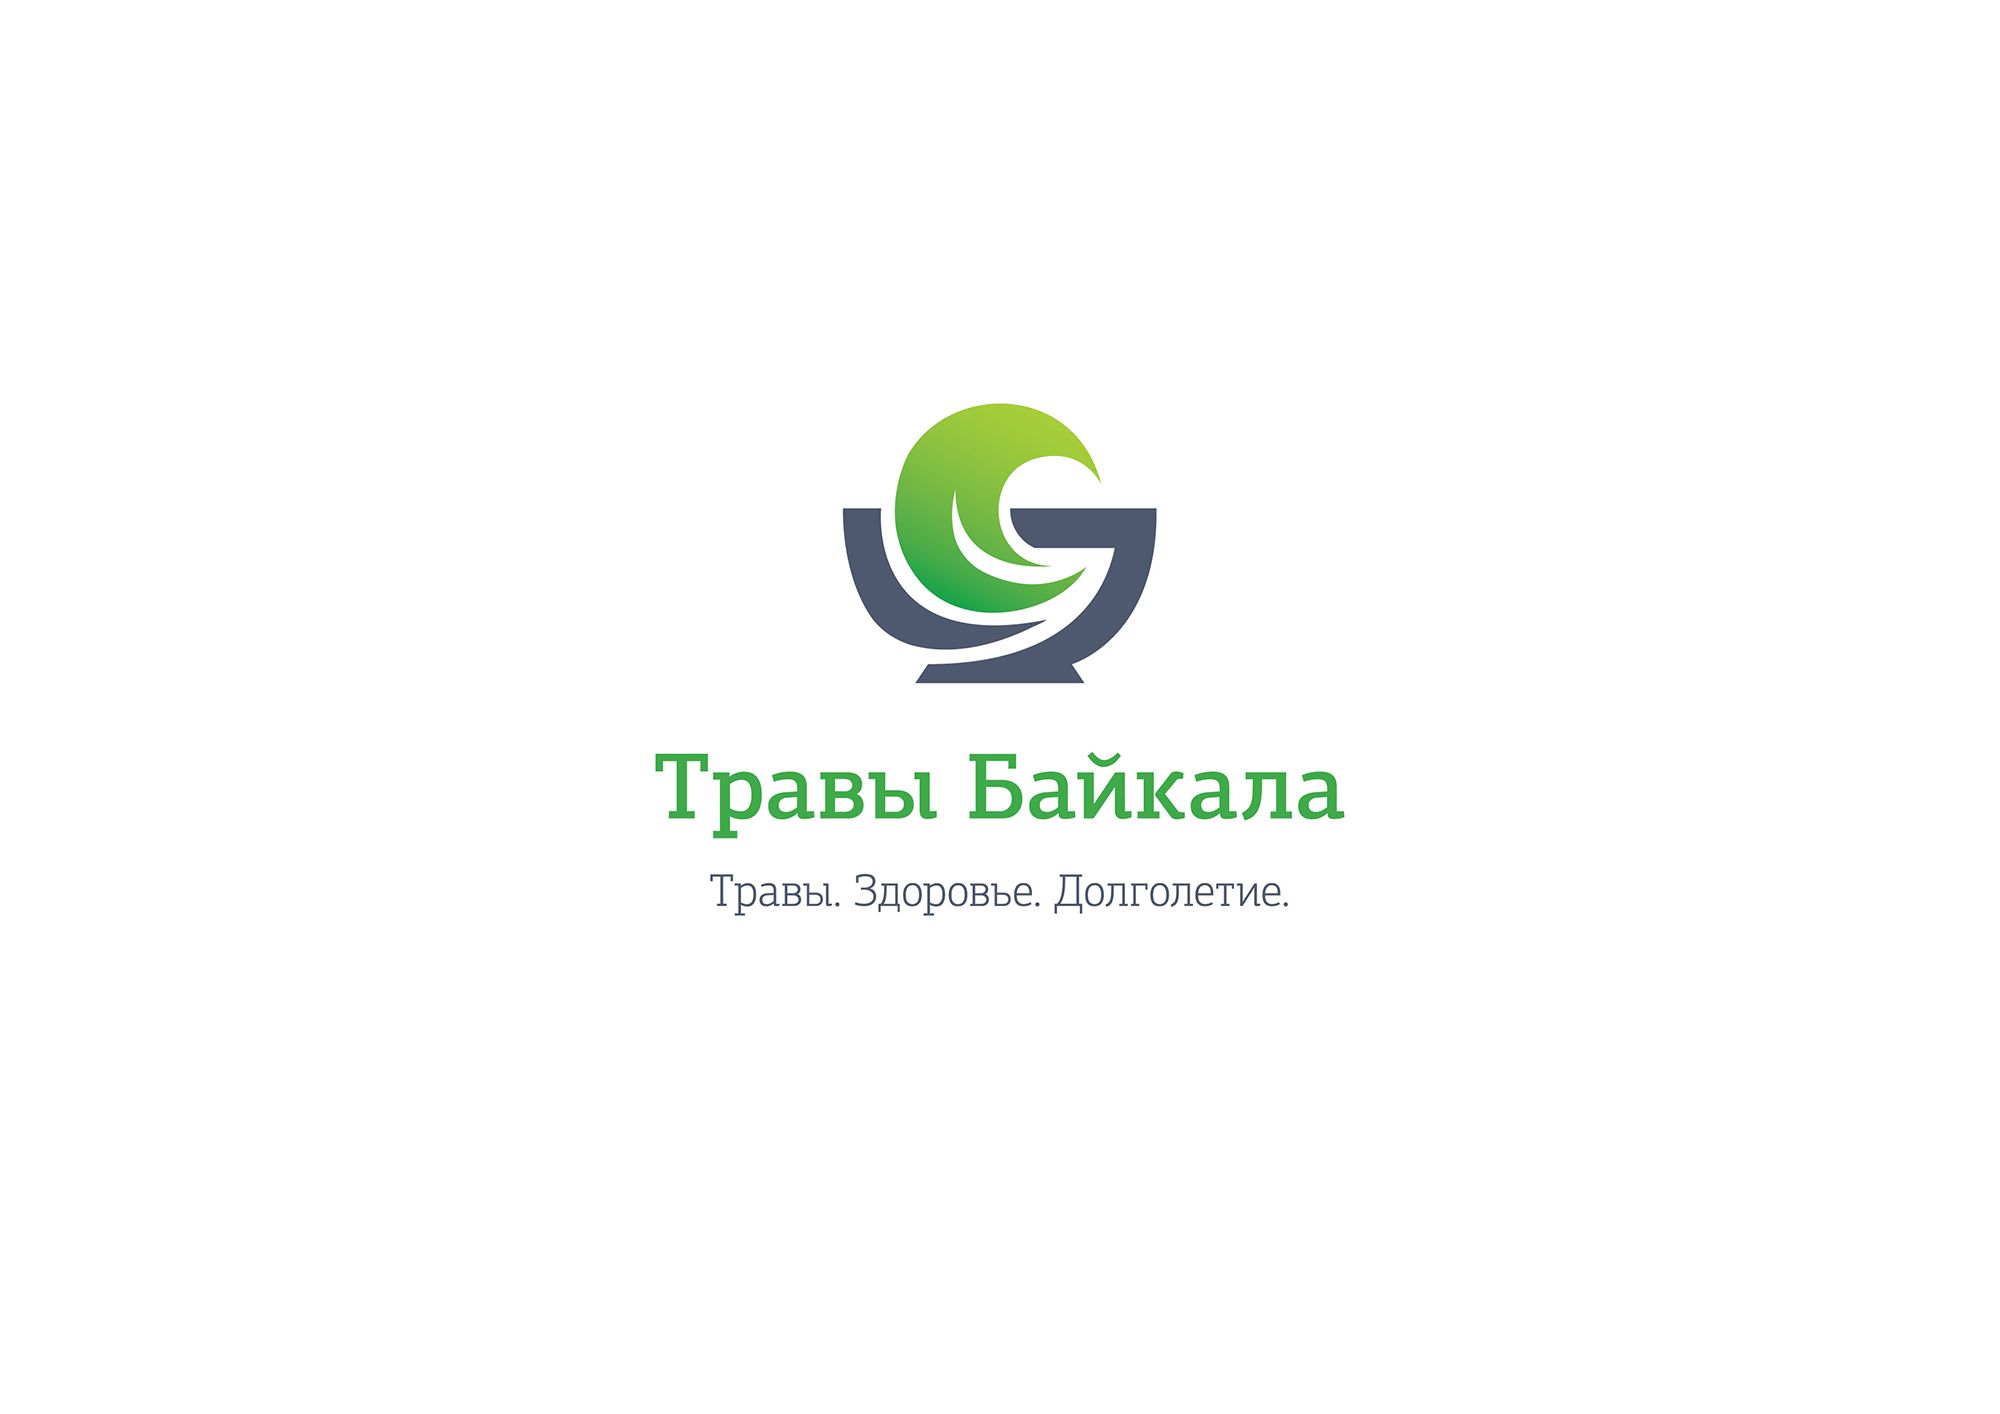 Логотип для Травы Байкала Baikal Herbs - дизайнер BalykinaKatya